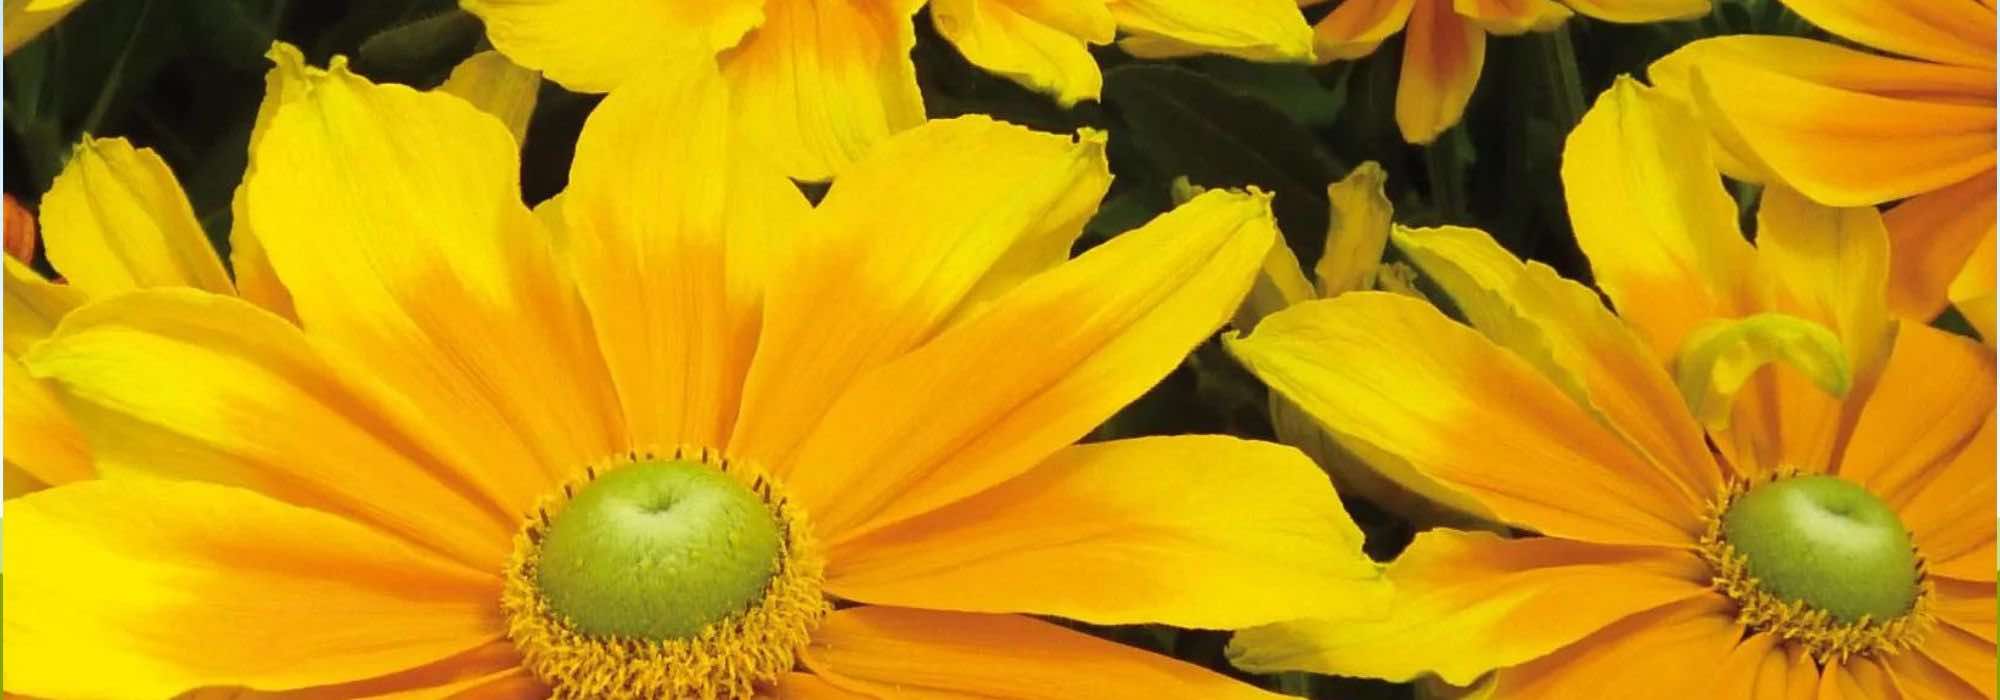 7 annuelles à fleurs jaunes pour réveiller votre jardin